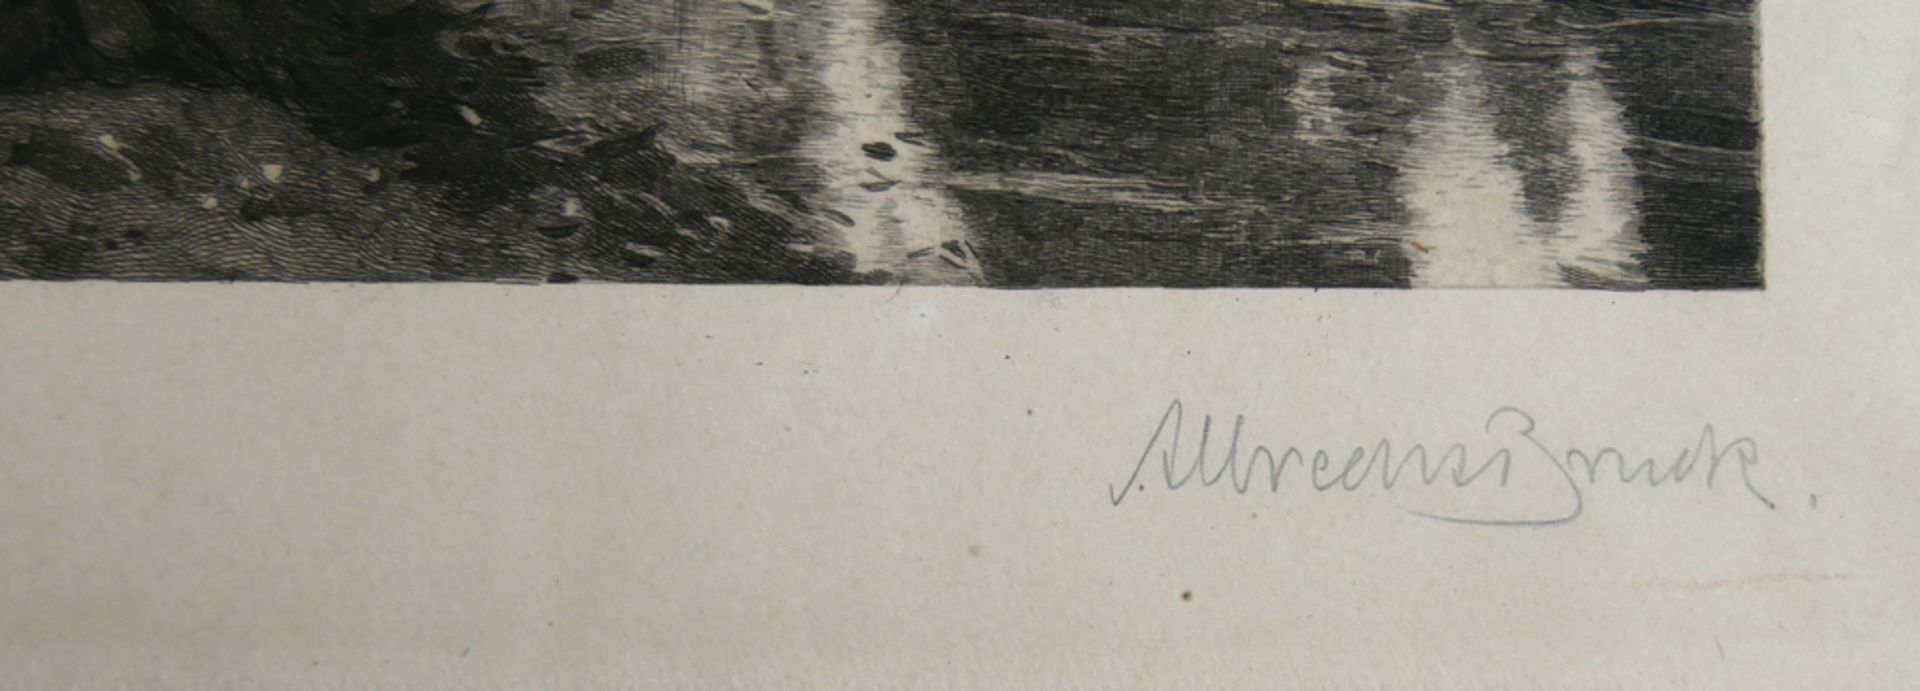 Radierung "Am Fluß" von Corot (1796-1875), unleserliche Signatur (A. Brunck?), Signatur unten - Bild 2 aus 2